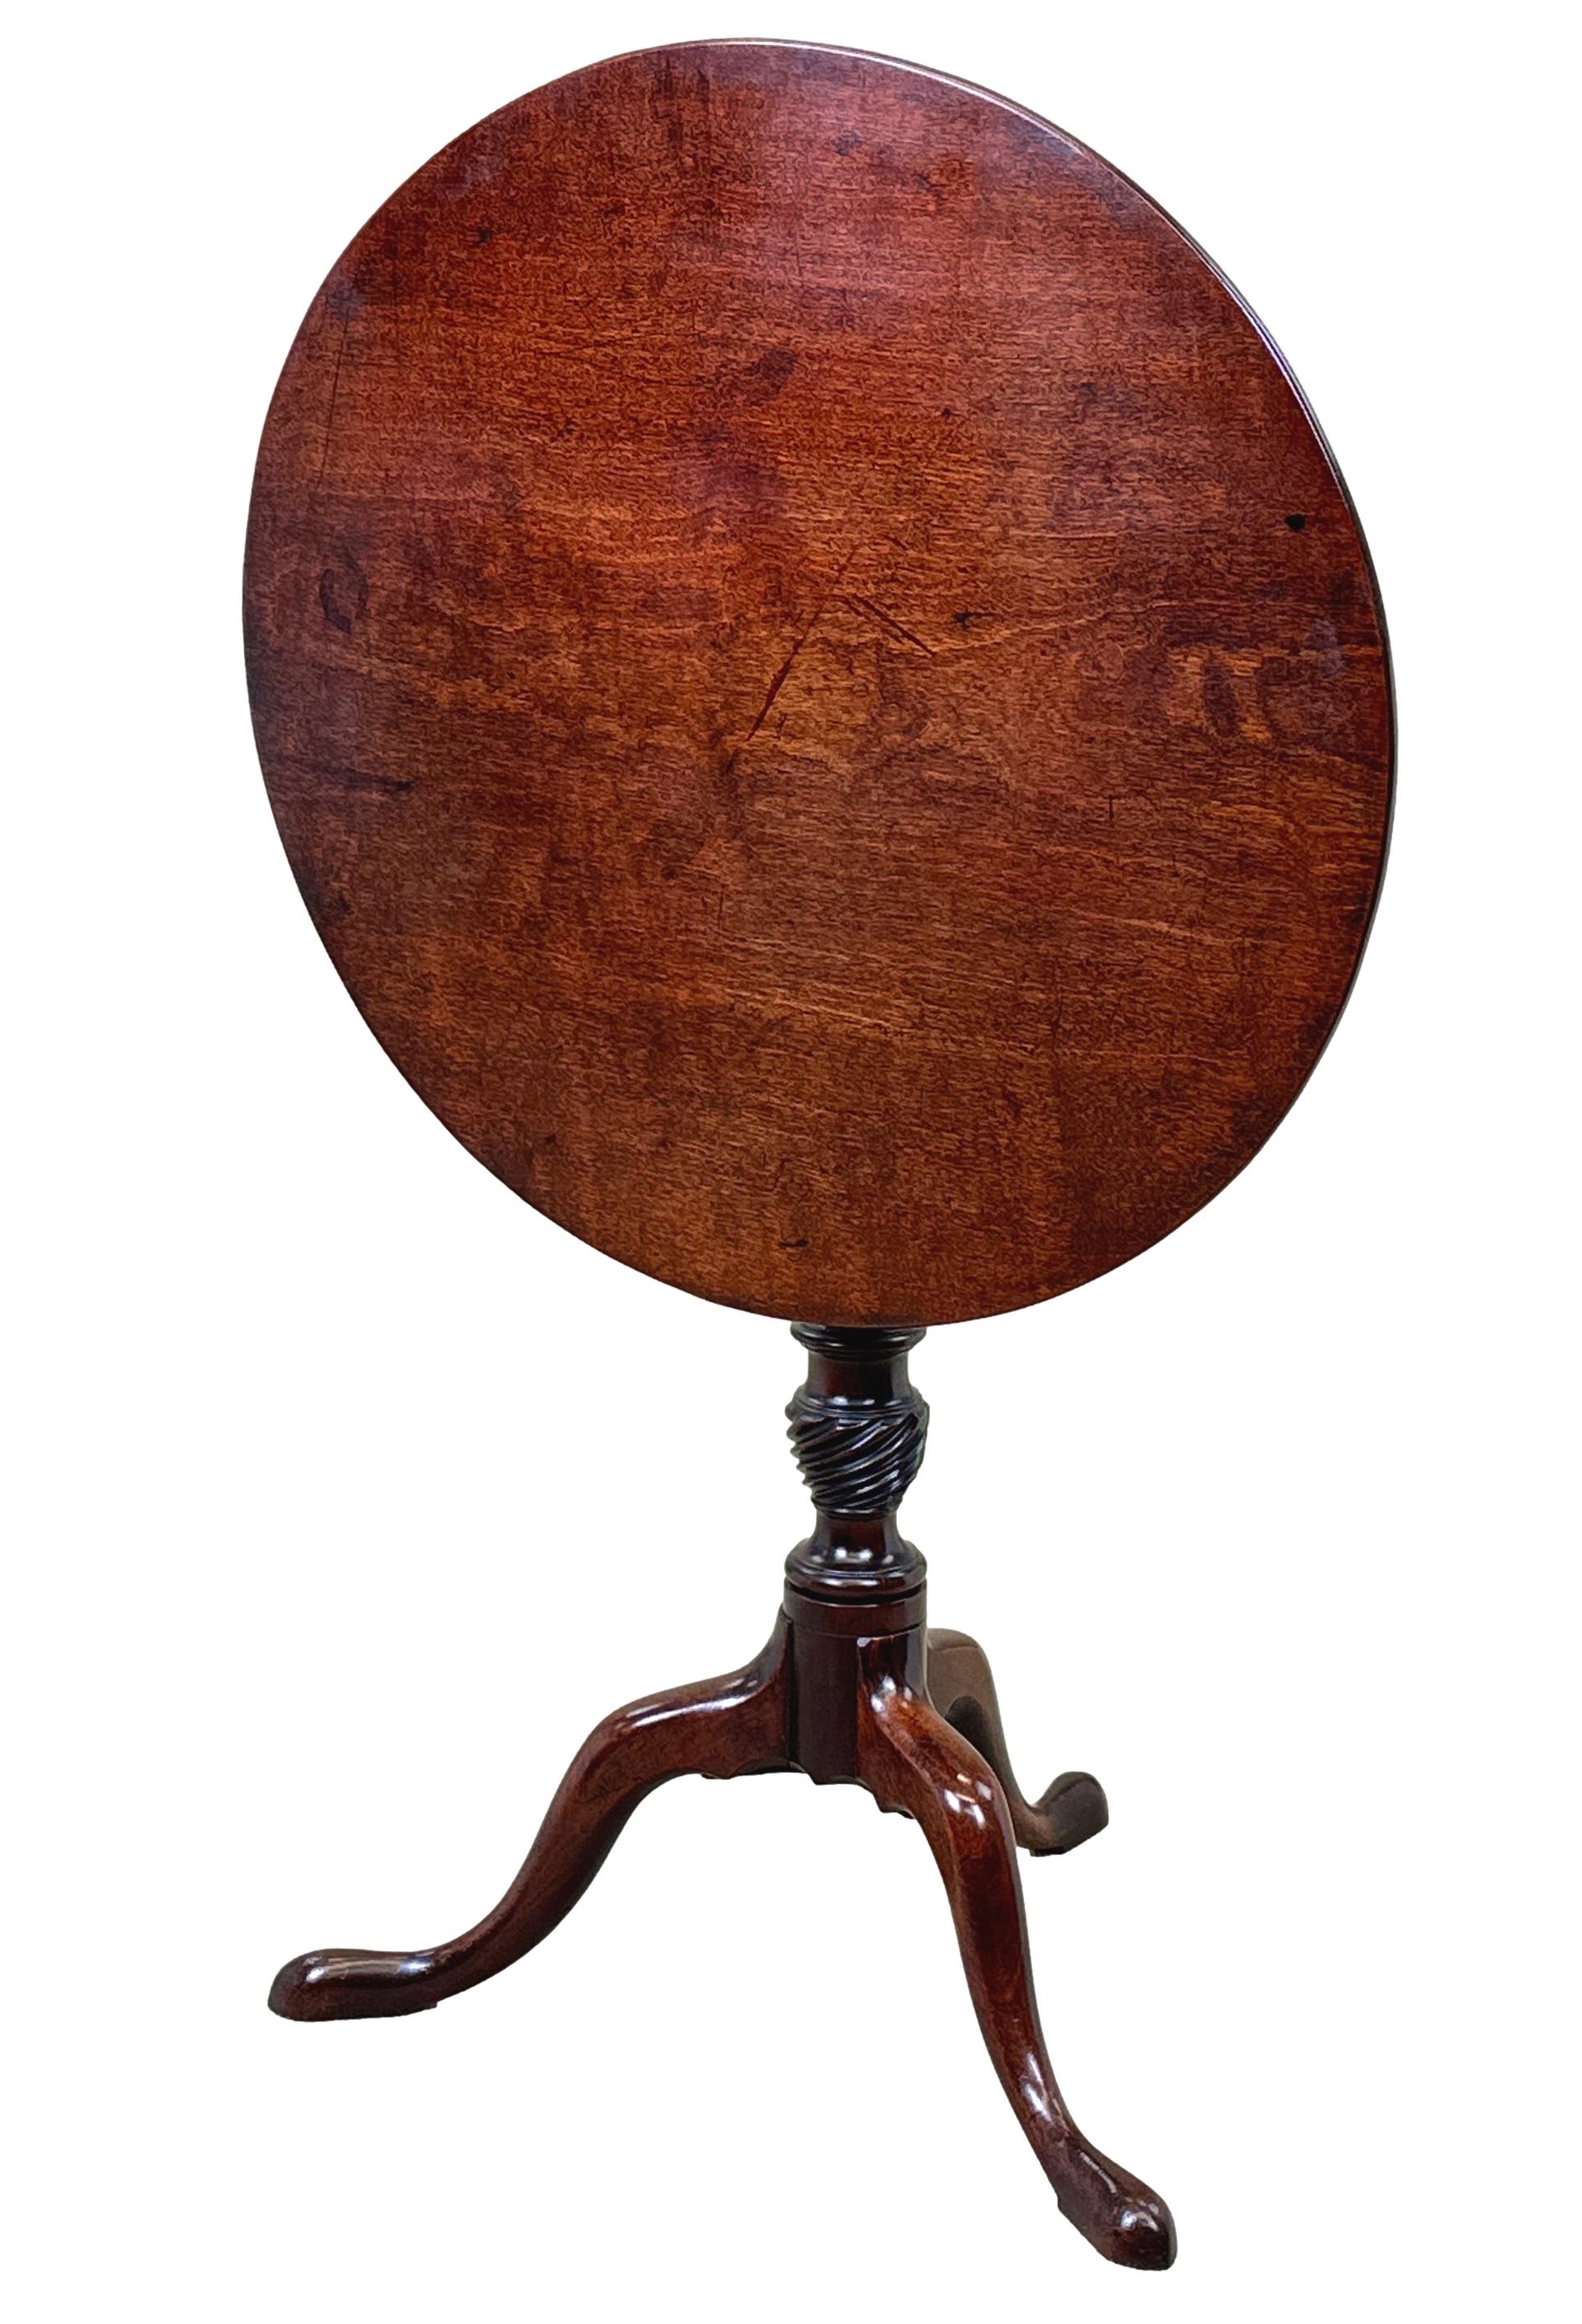 Table à vin ou table à lampe de bonne qualité en acajou géorgien du XVIIIe siècle, d'époque Chippendale, avec plateau circulaire basculant bien figuré, conservant une couleur et une patine exceptionnelles, surmonté d'une tige centrale tournée avec